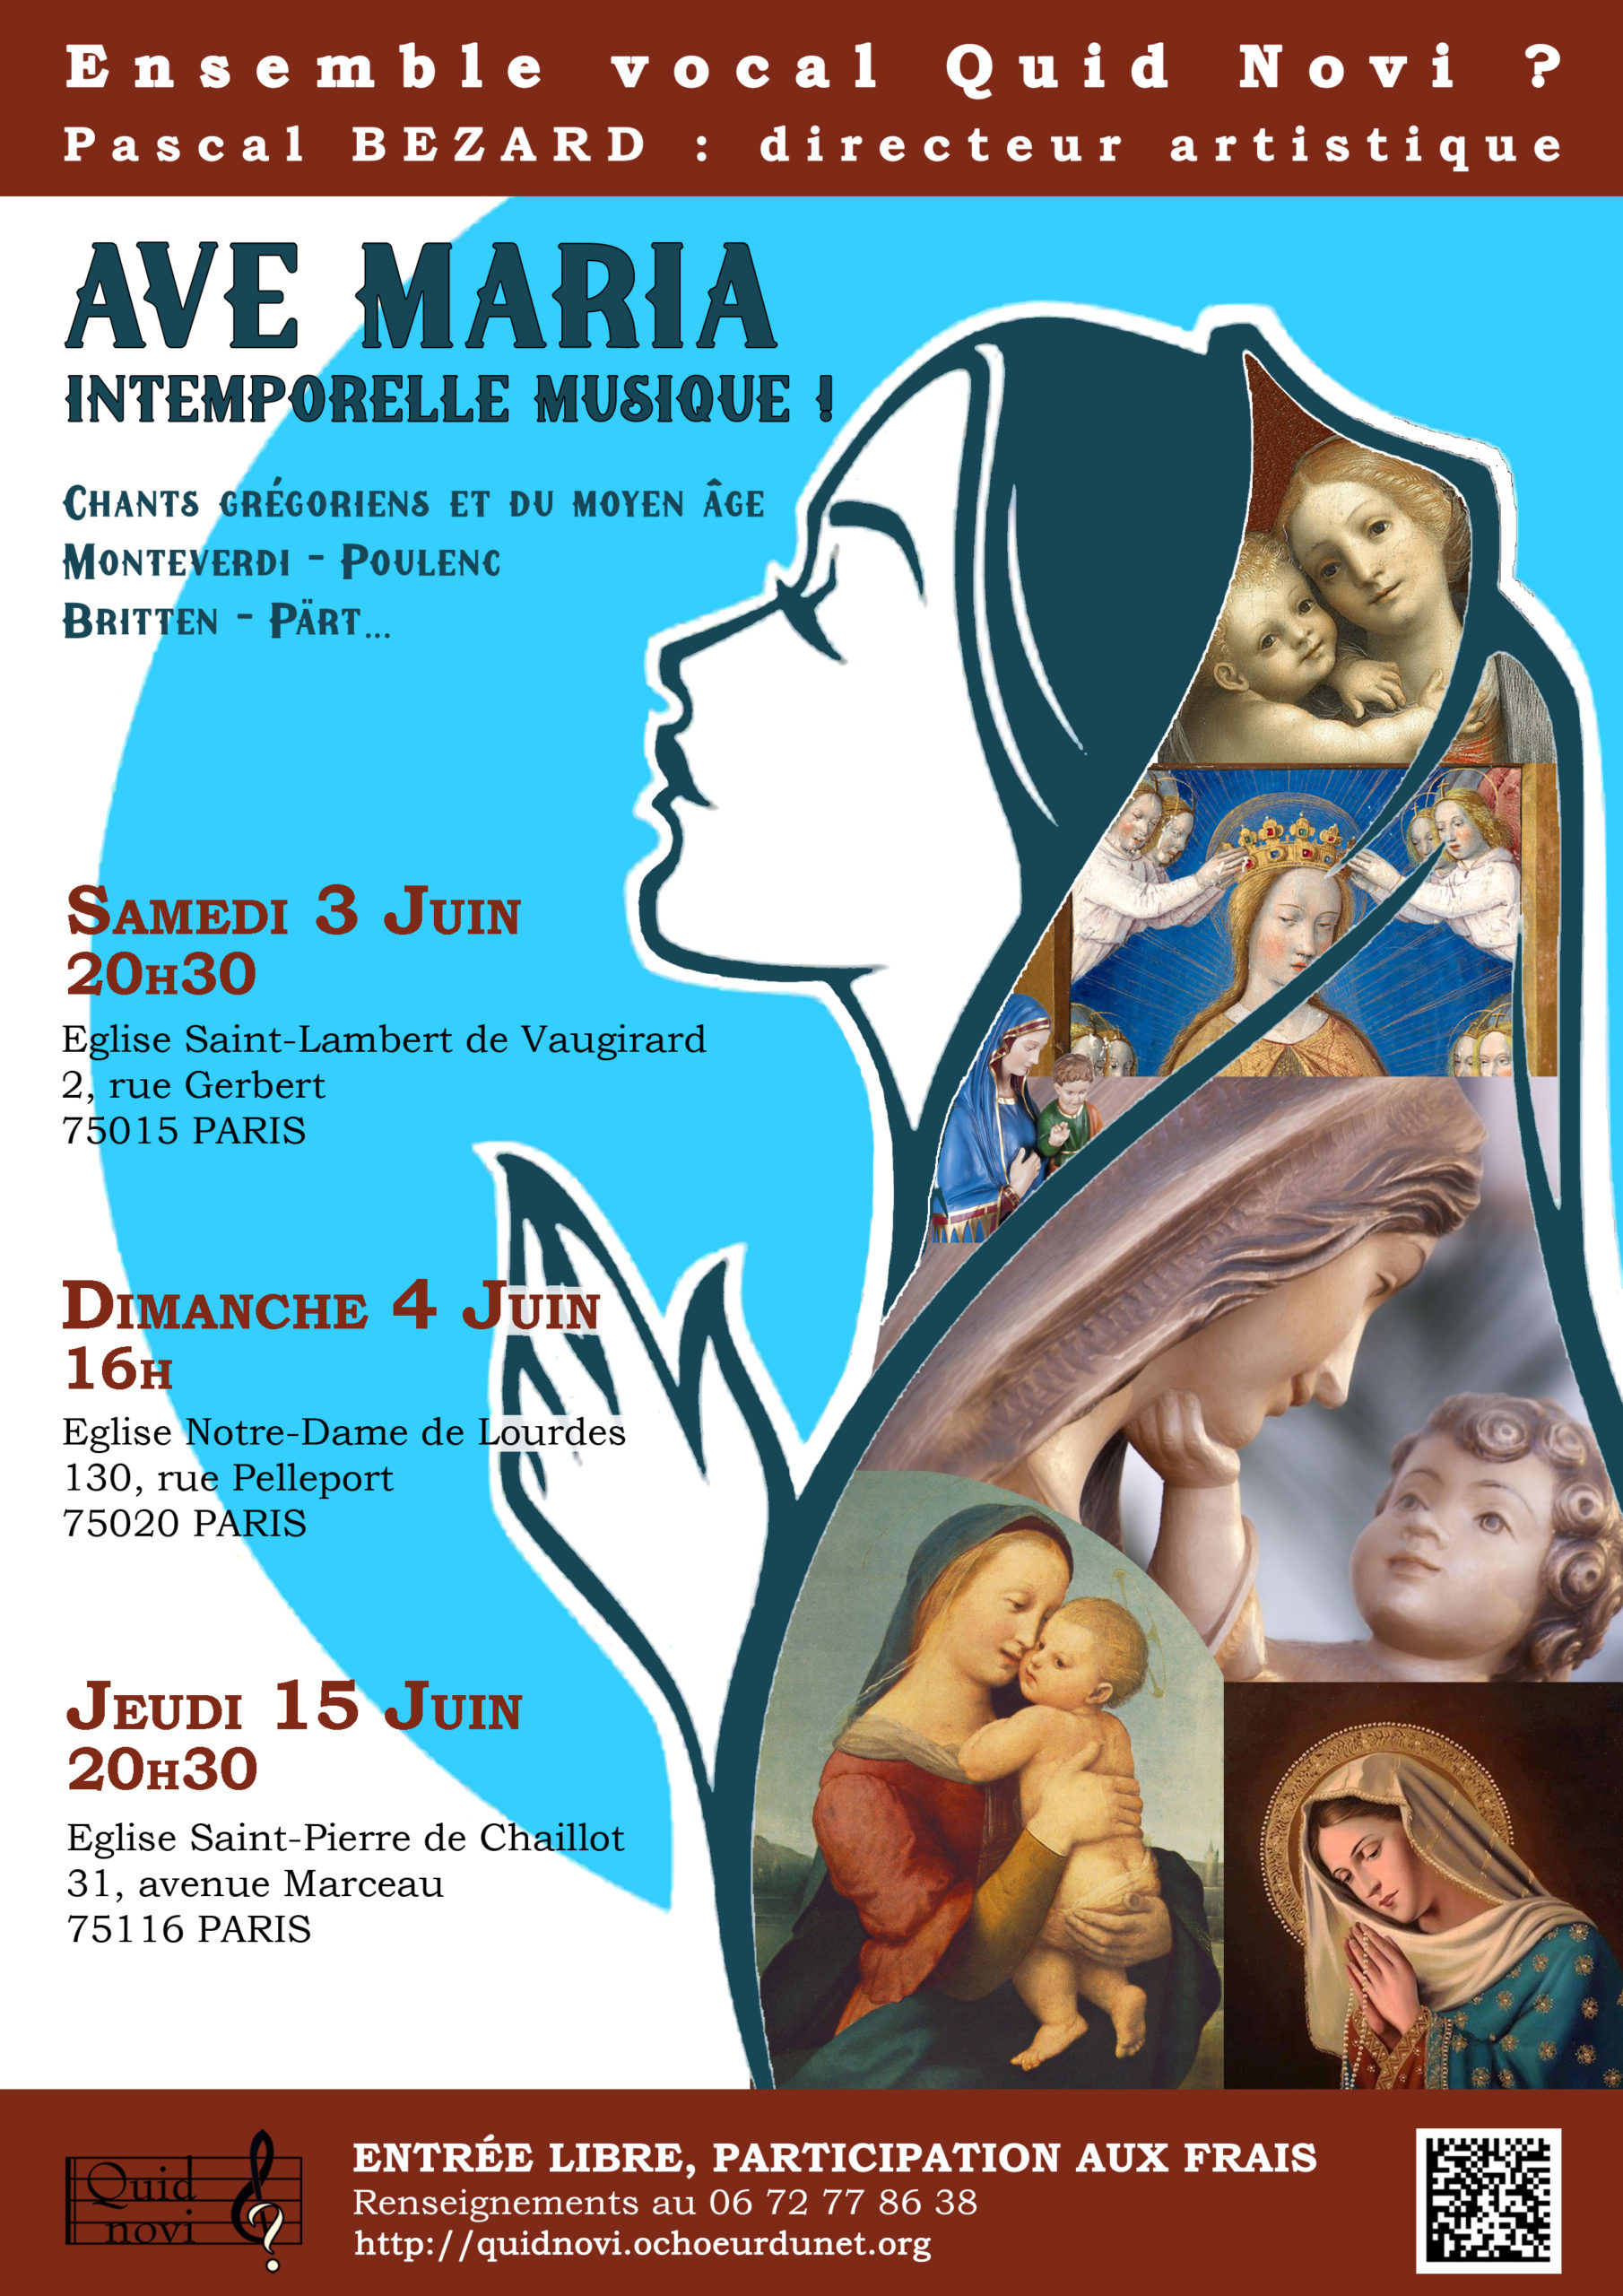 Ave Maria Intemporelle Musique à St Pierre de Chaillot